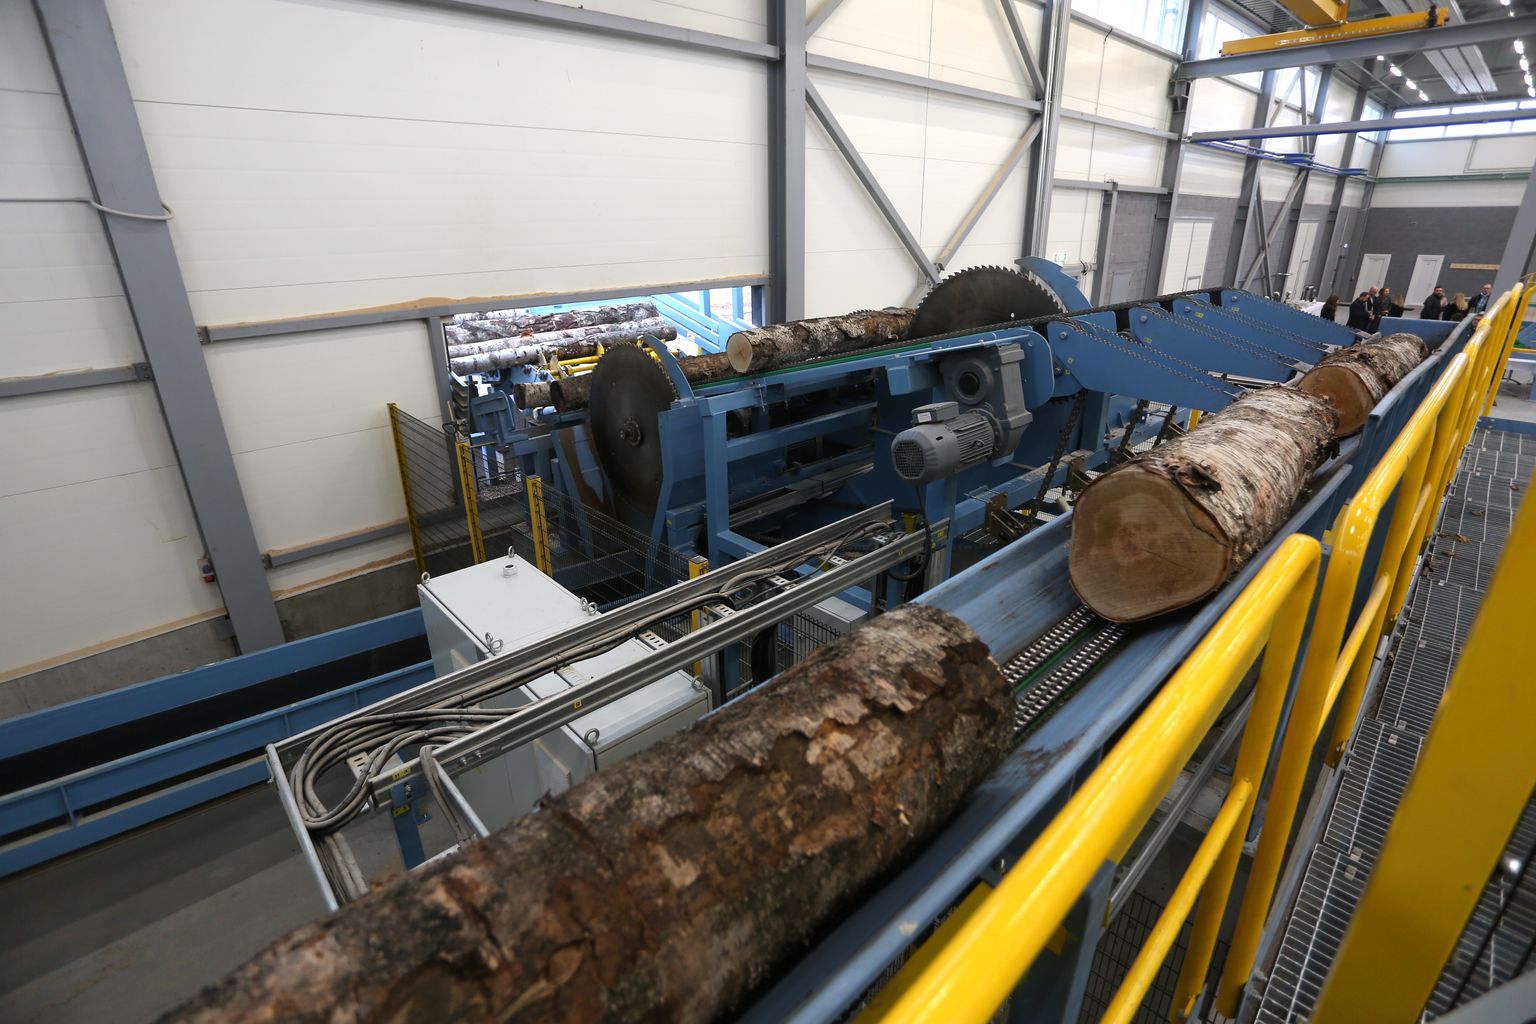 Jaunatklātā kompānijas "AmberBirch" kokapstrādes rūpnīca, kurā tiks ražots augstas kvalitātes tehniskais finieris, Krustpils pagastā, agrākā armijas lidlauka teritorijā.